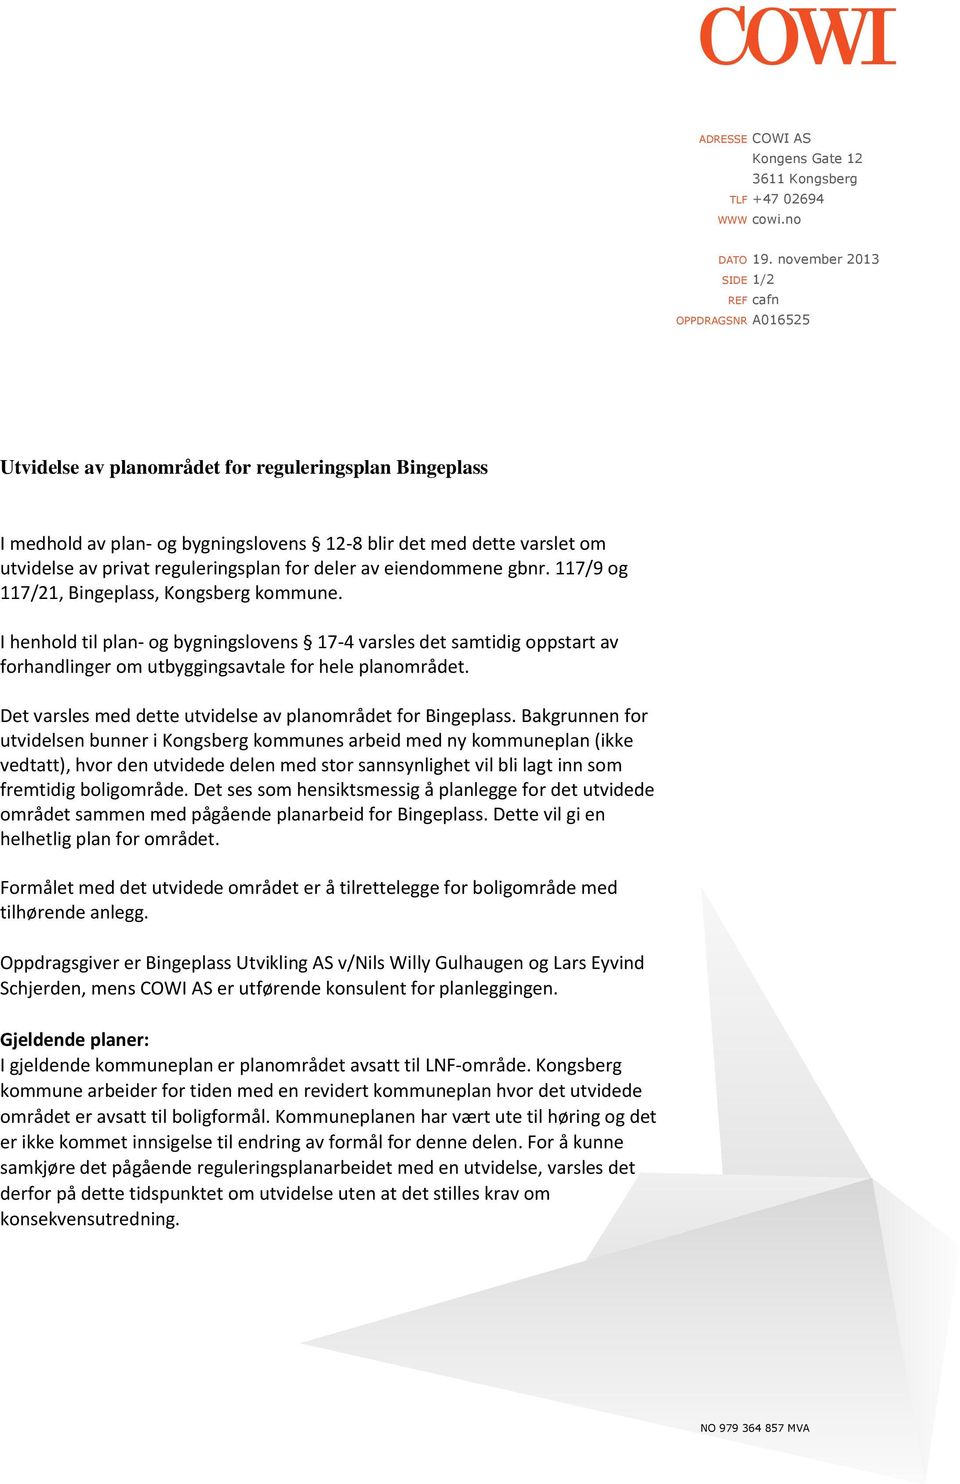 reguleringsplan for deler av eiendommene gbnr. 117/9 og 117/21, Bingeplass, Kongsberg kommune.